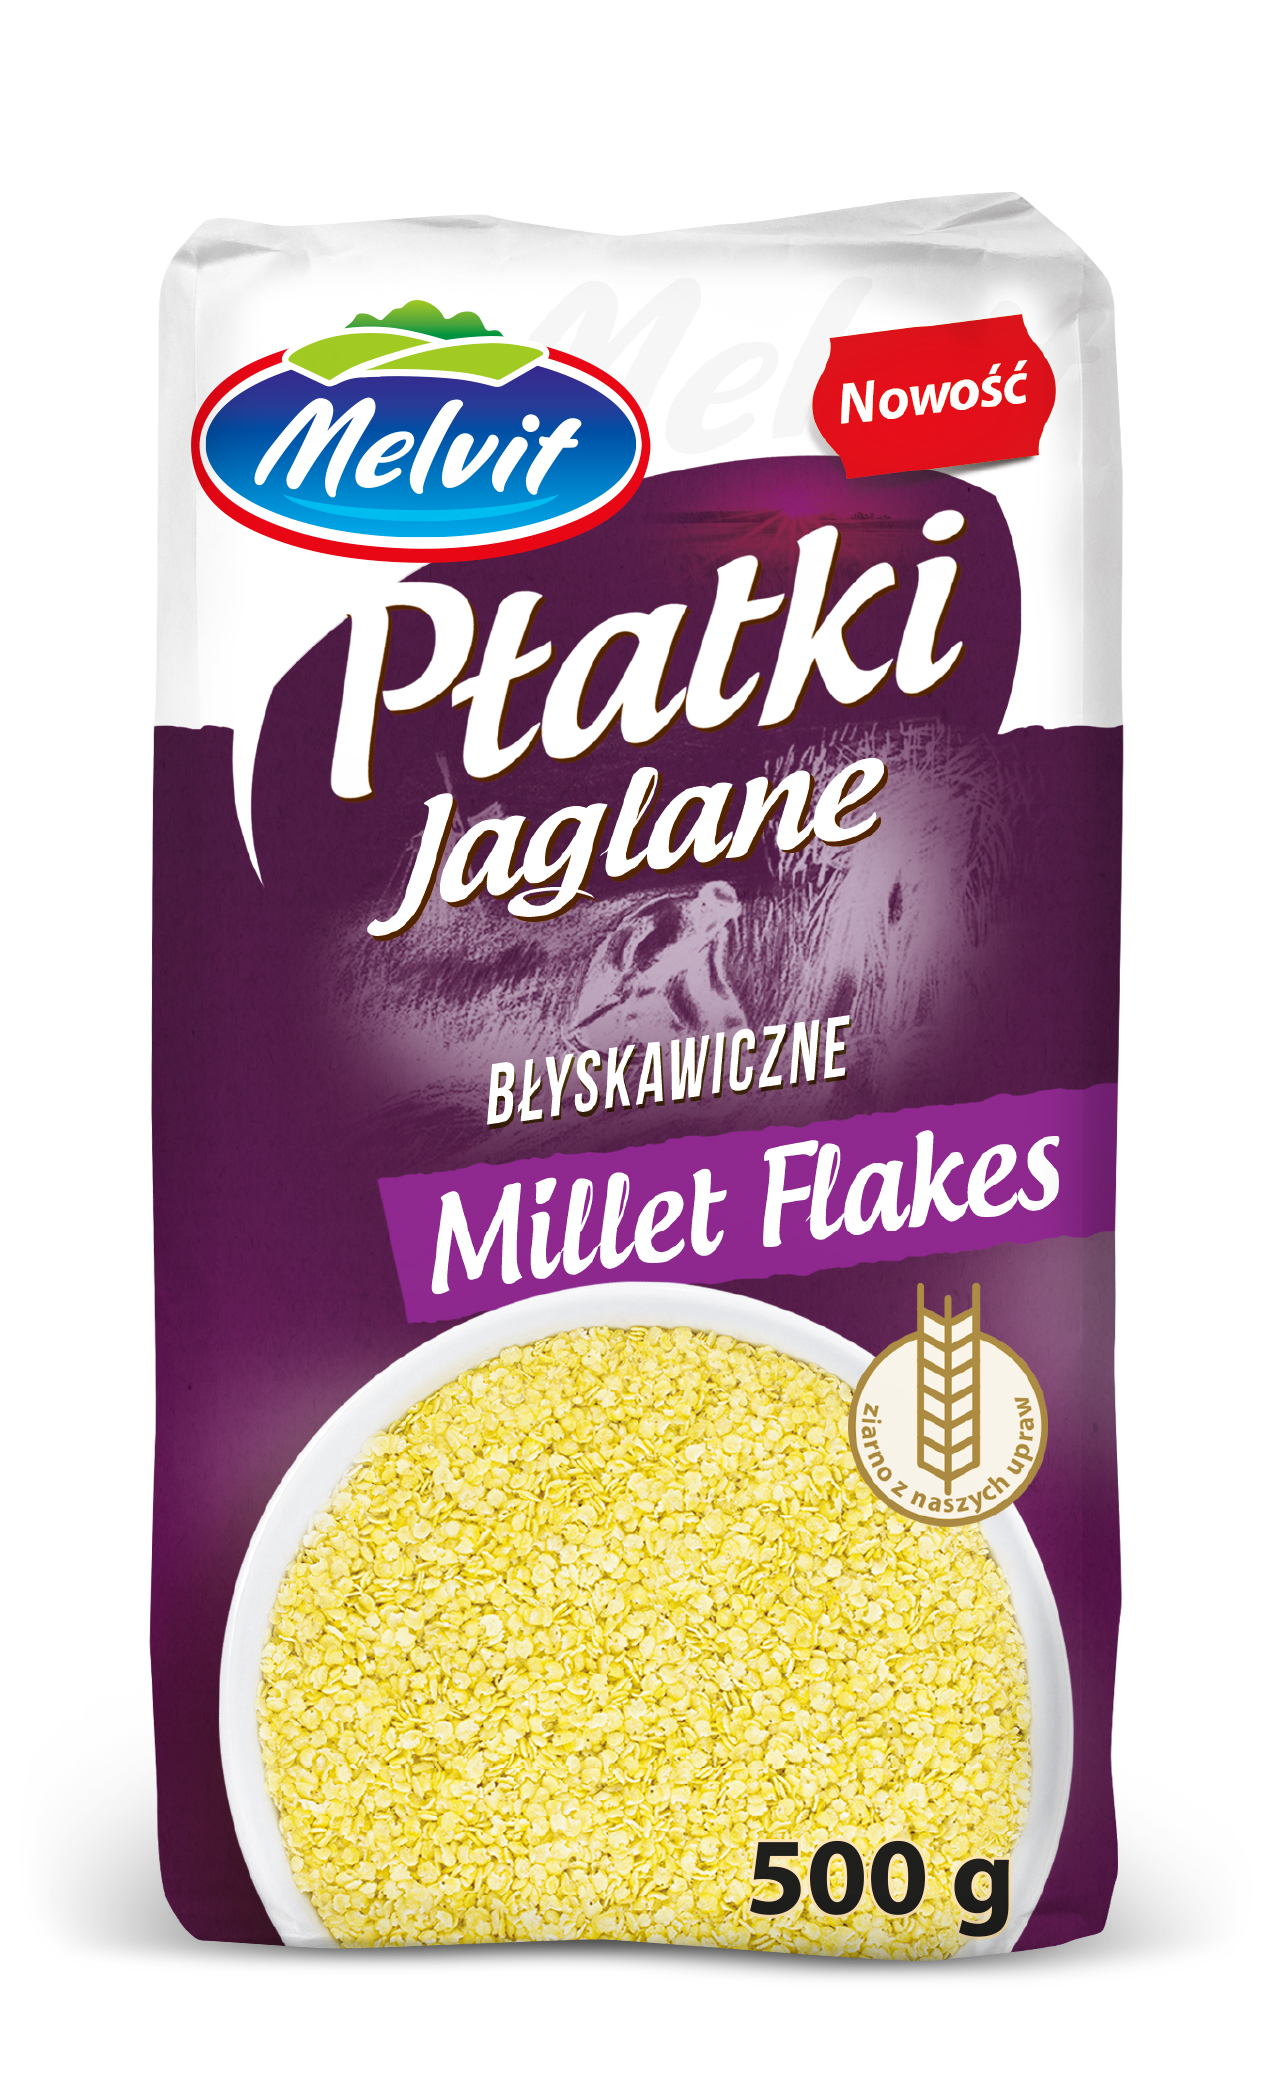 buy millet flakes in bulk